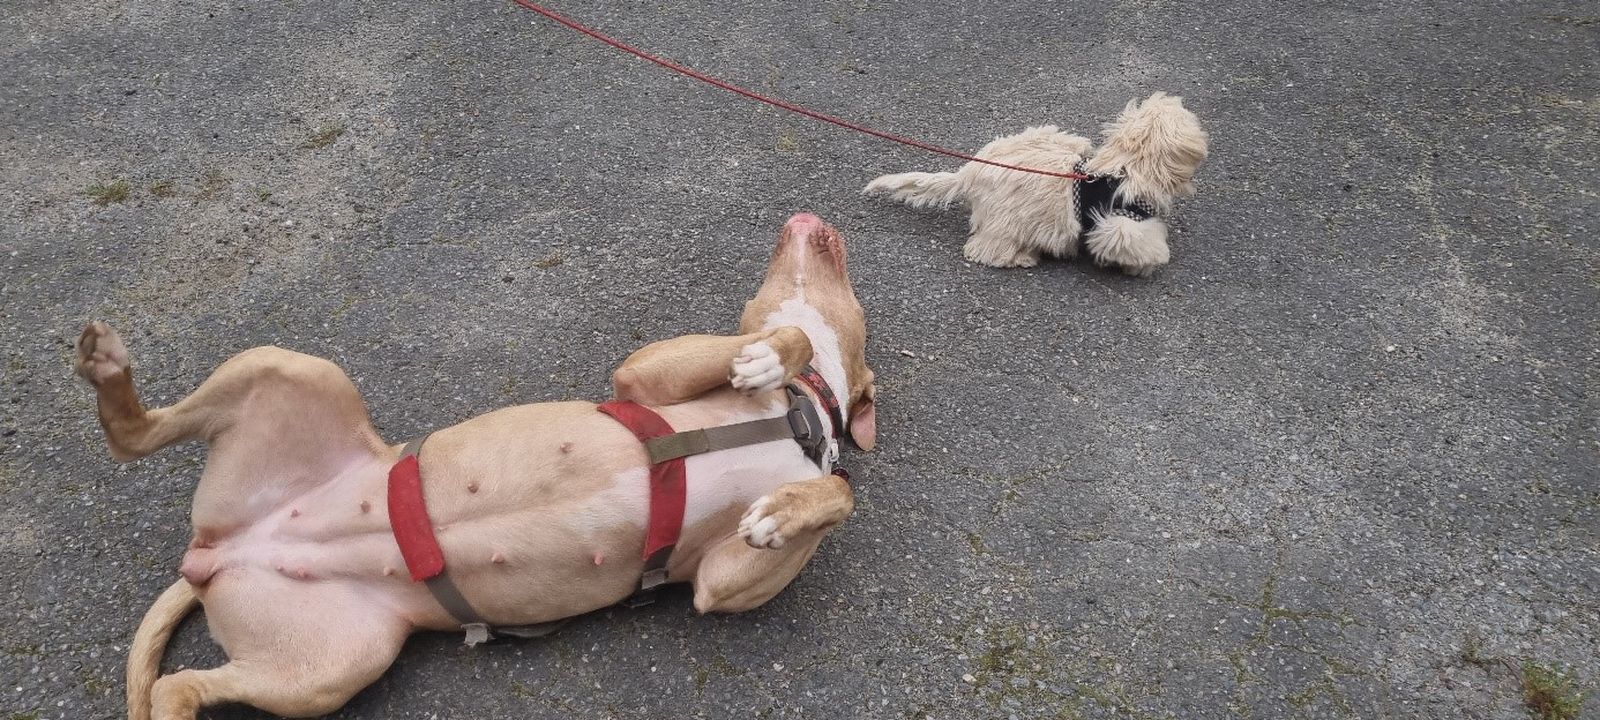 Ein hellbraun-beiger American Staffordshire Terrier mit rotem Hundegeschirr wälzt sich auf dem Asphaltboden und neben ihm ist ein kleiner weißer Hund an der Leine